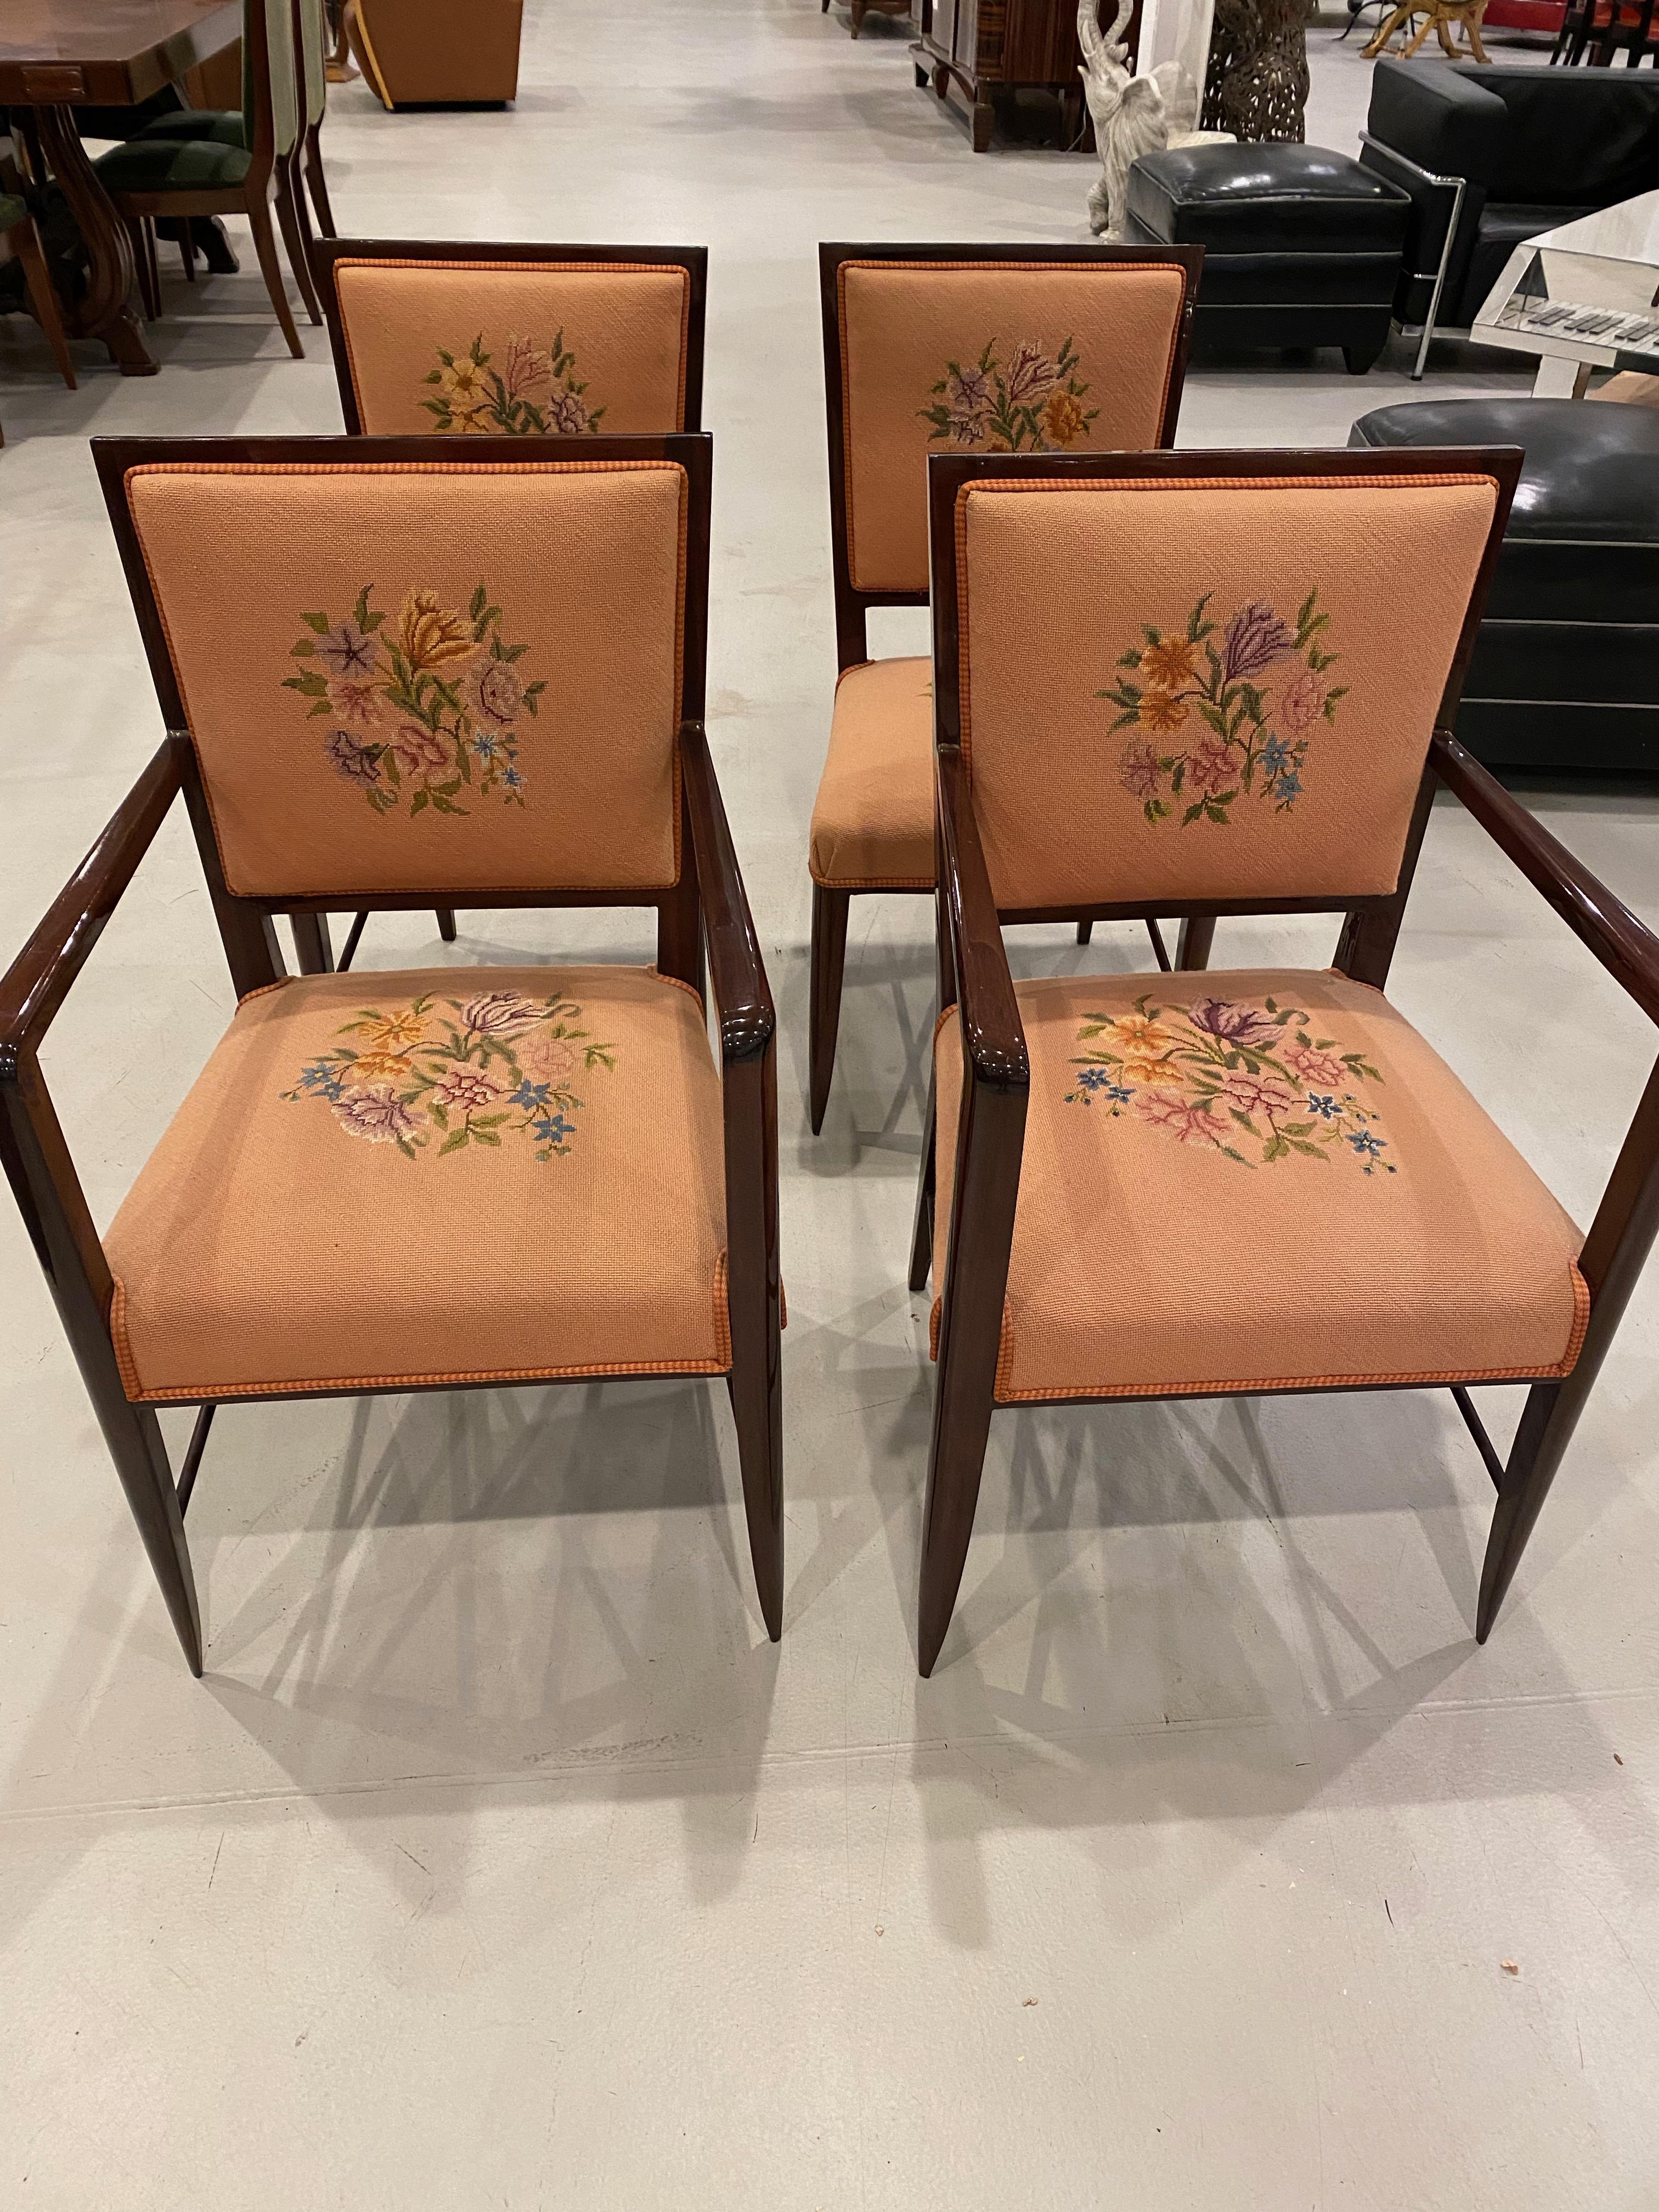 Superbe ensemble de quatre chaises Art Déco françaises. Deux des chaises ont un accoudoir tandis que les deux autres sont sans accoudoir. Tapissé de motifs floraux sur le dossier et l'assise. Les cadres en bois ont été entièrement restaurés. Les